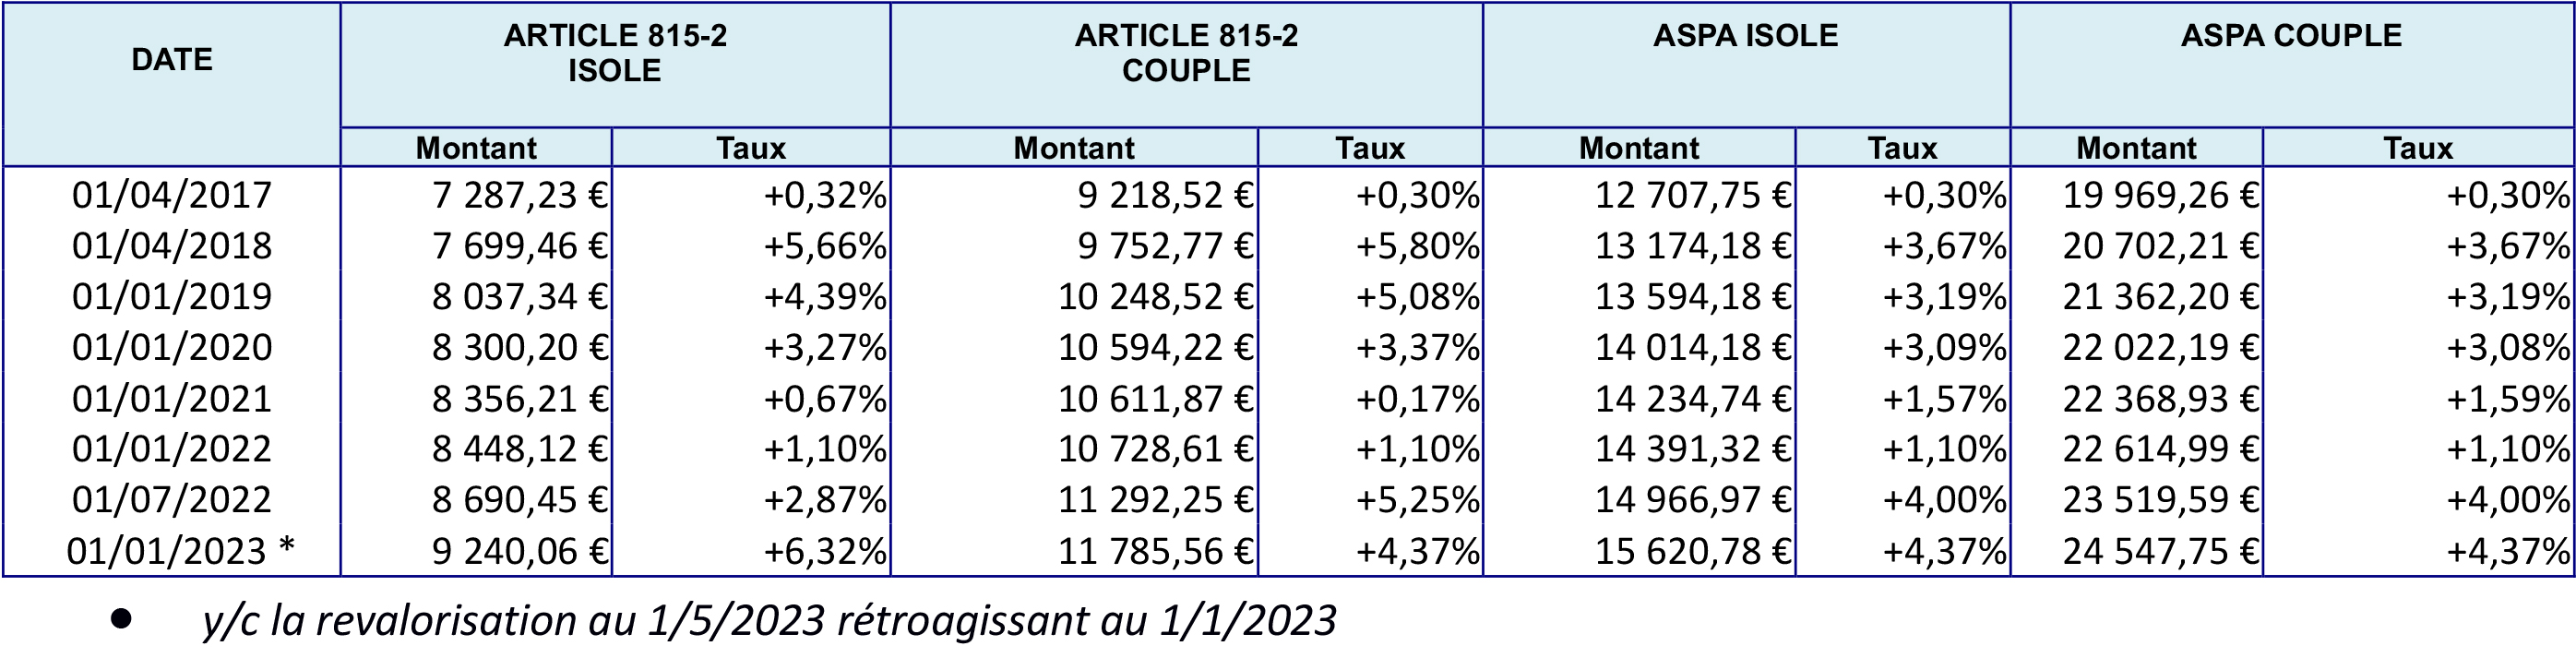 Les montants du minimum viellesse a Saint Pierre et Miquelon de 2017 a 2023